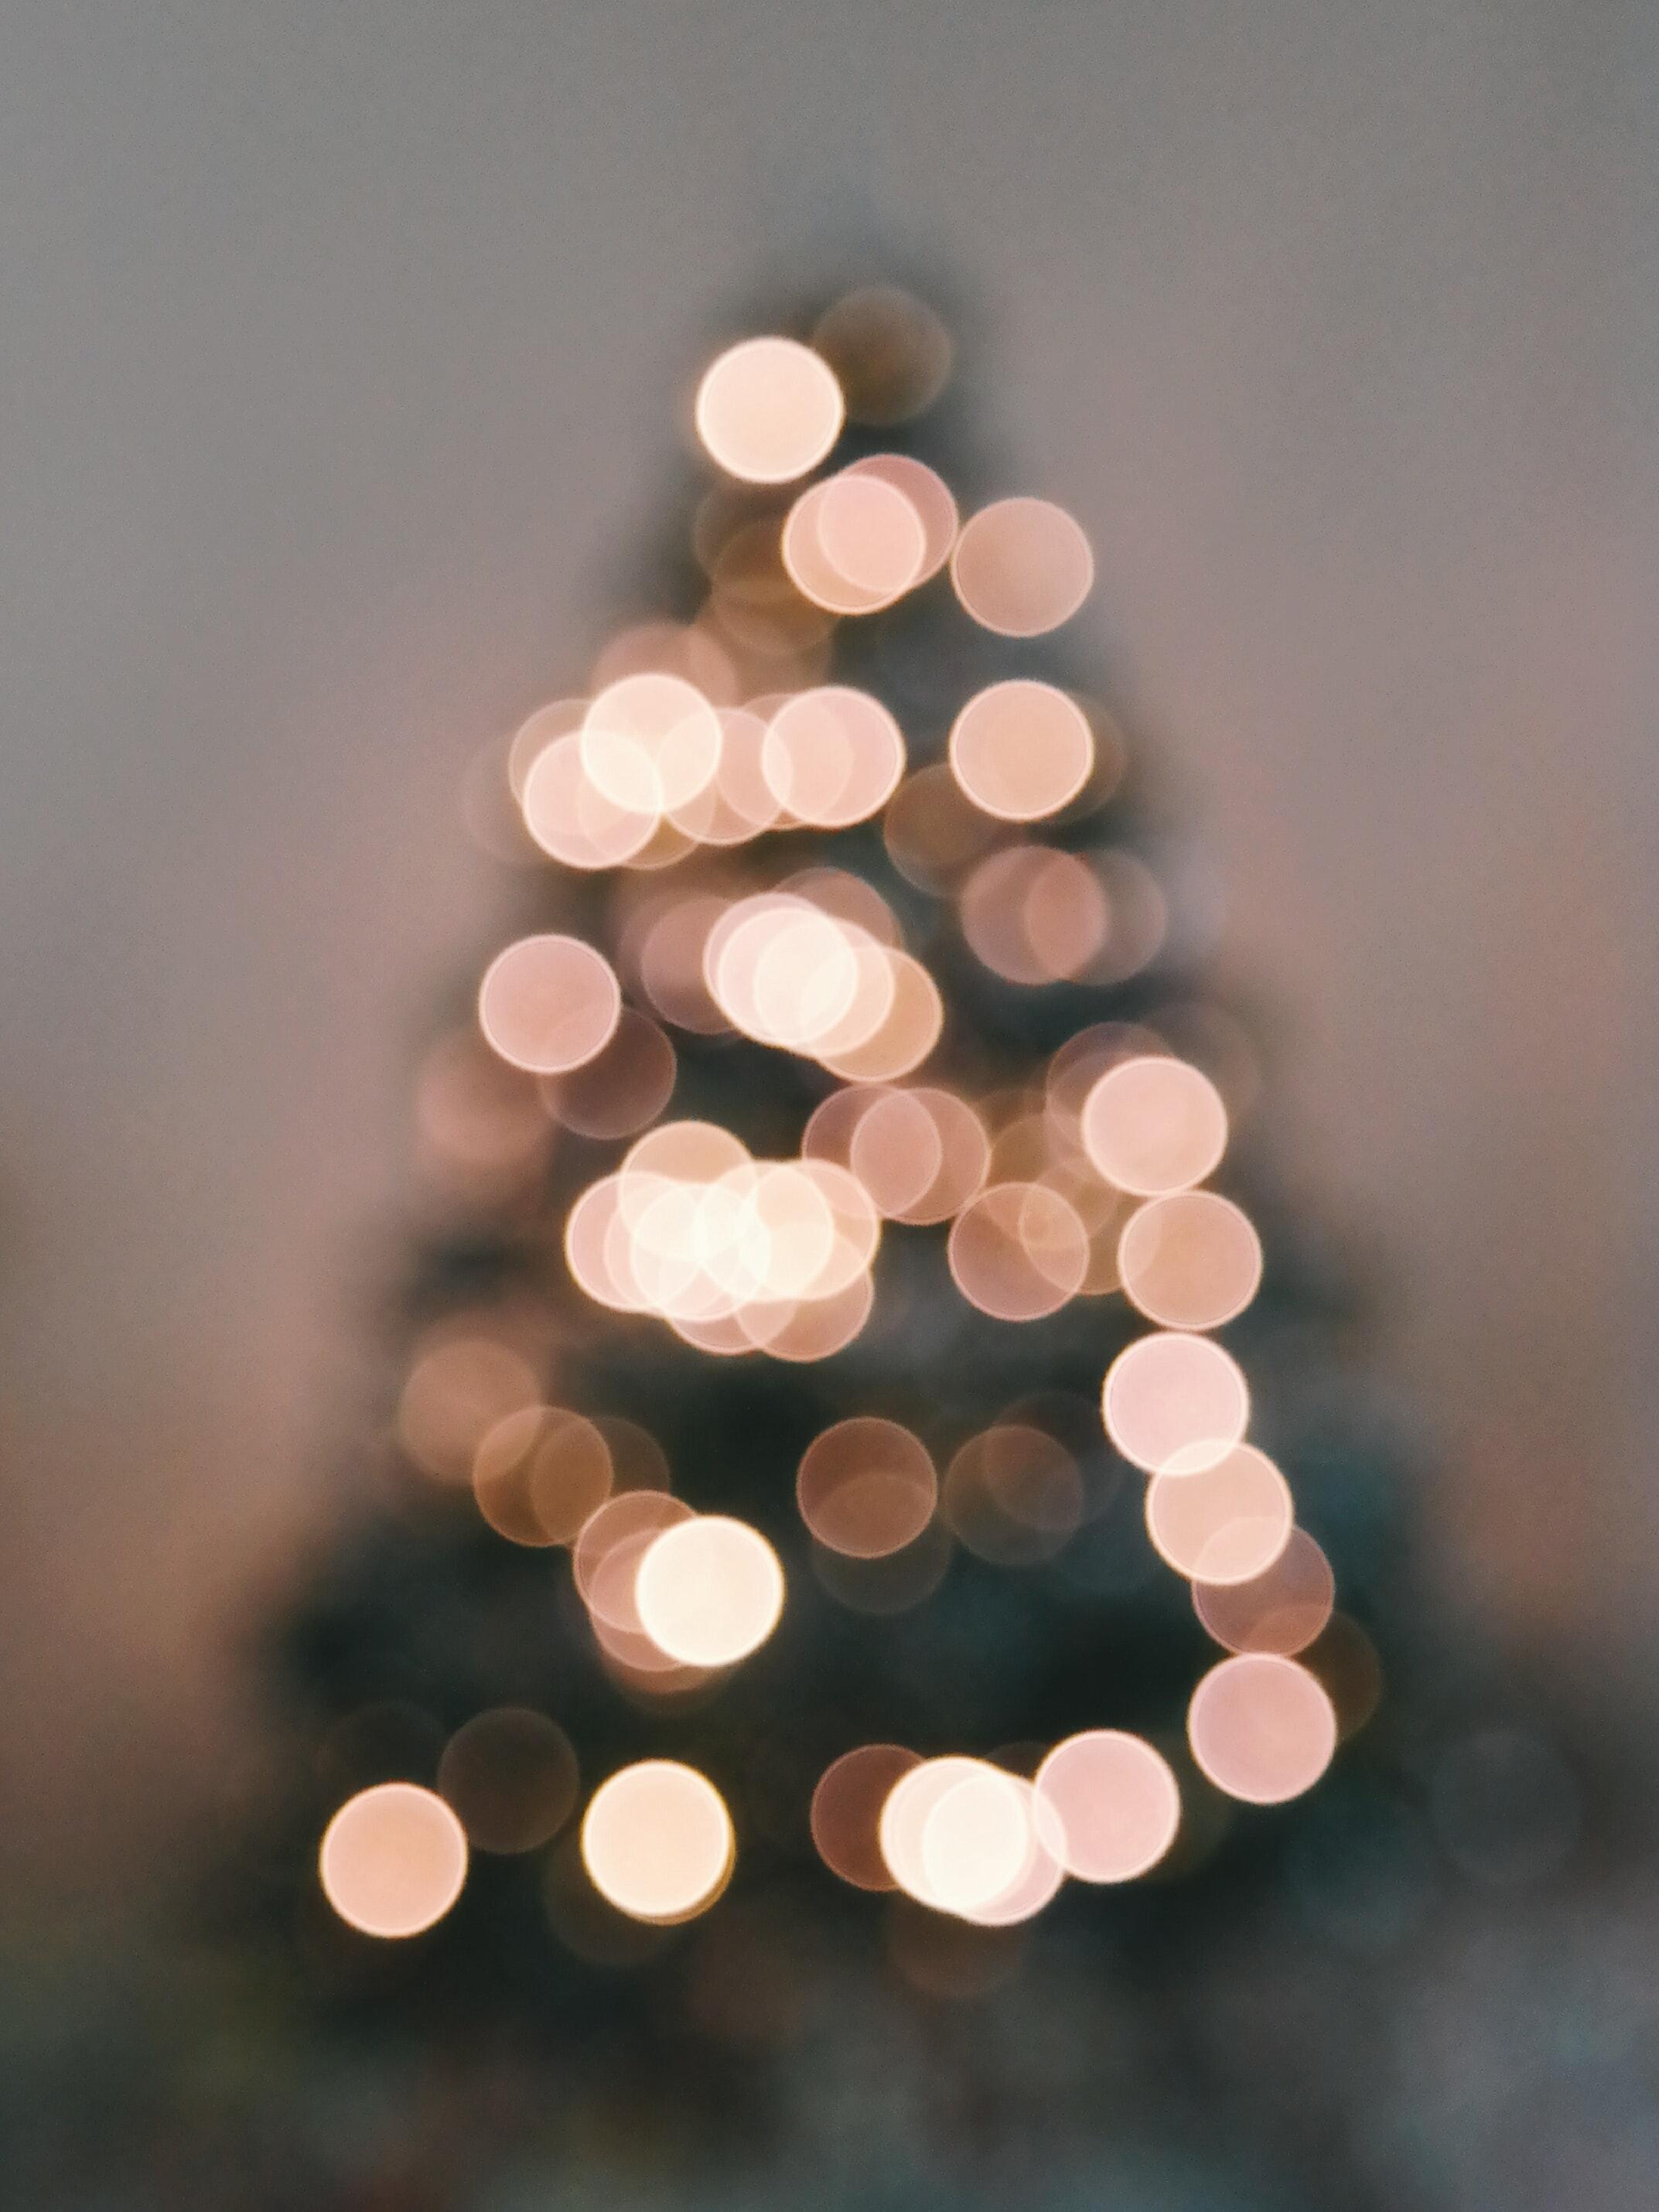 Defocused Image of Illuminated Christmas Tree Against Sky